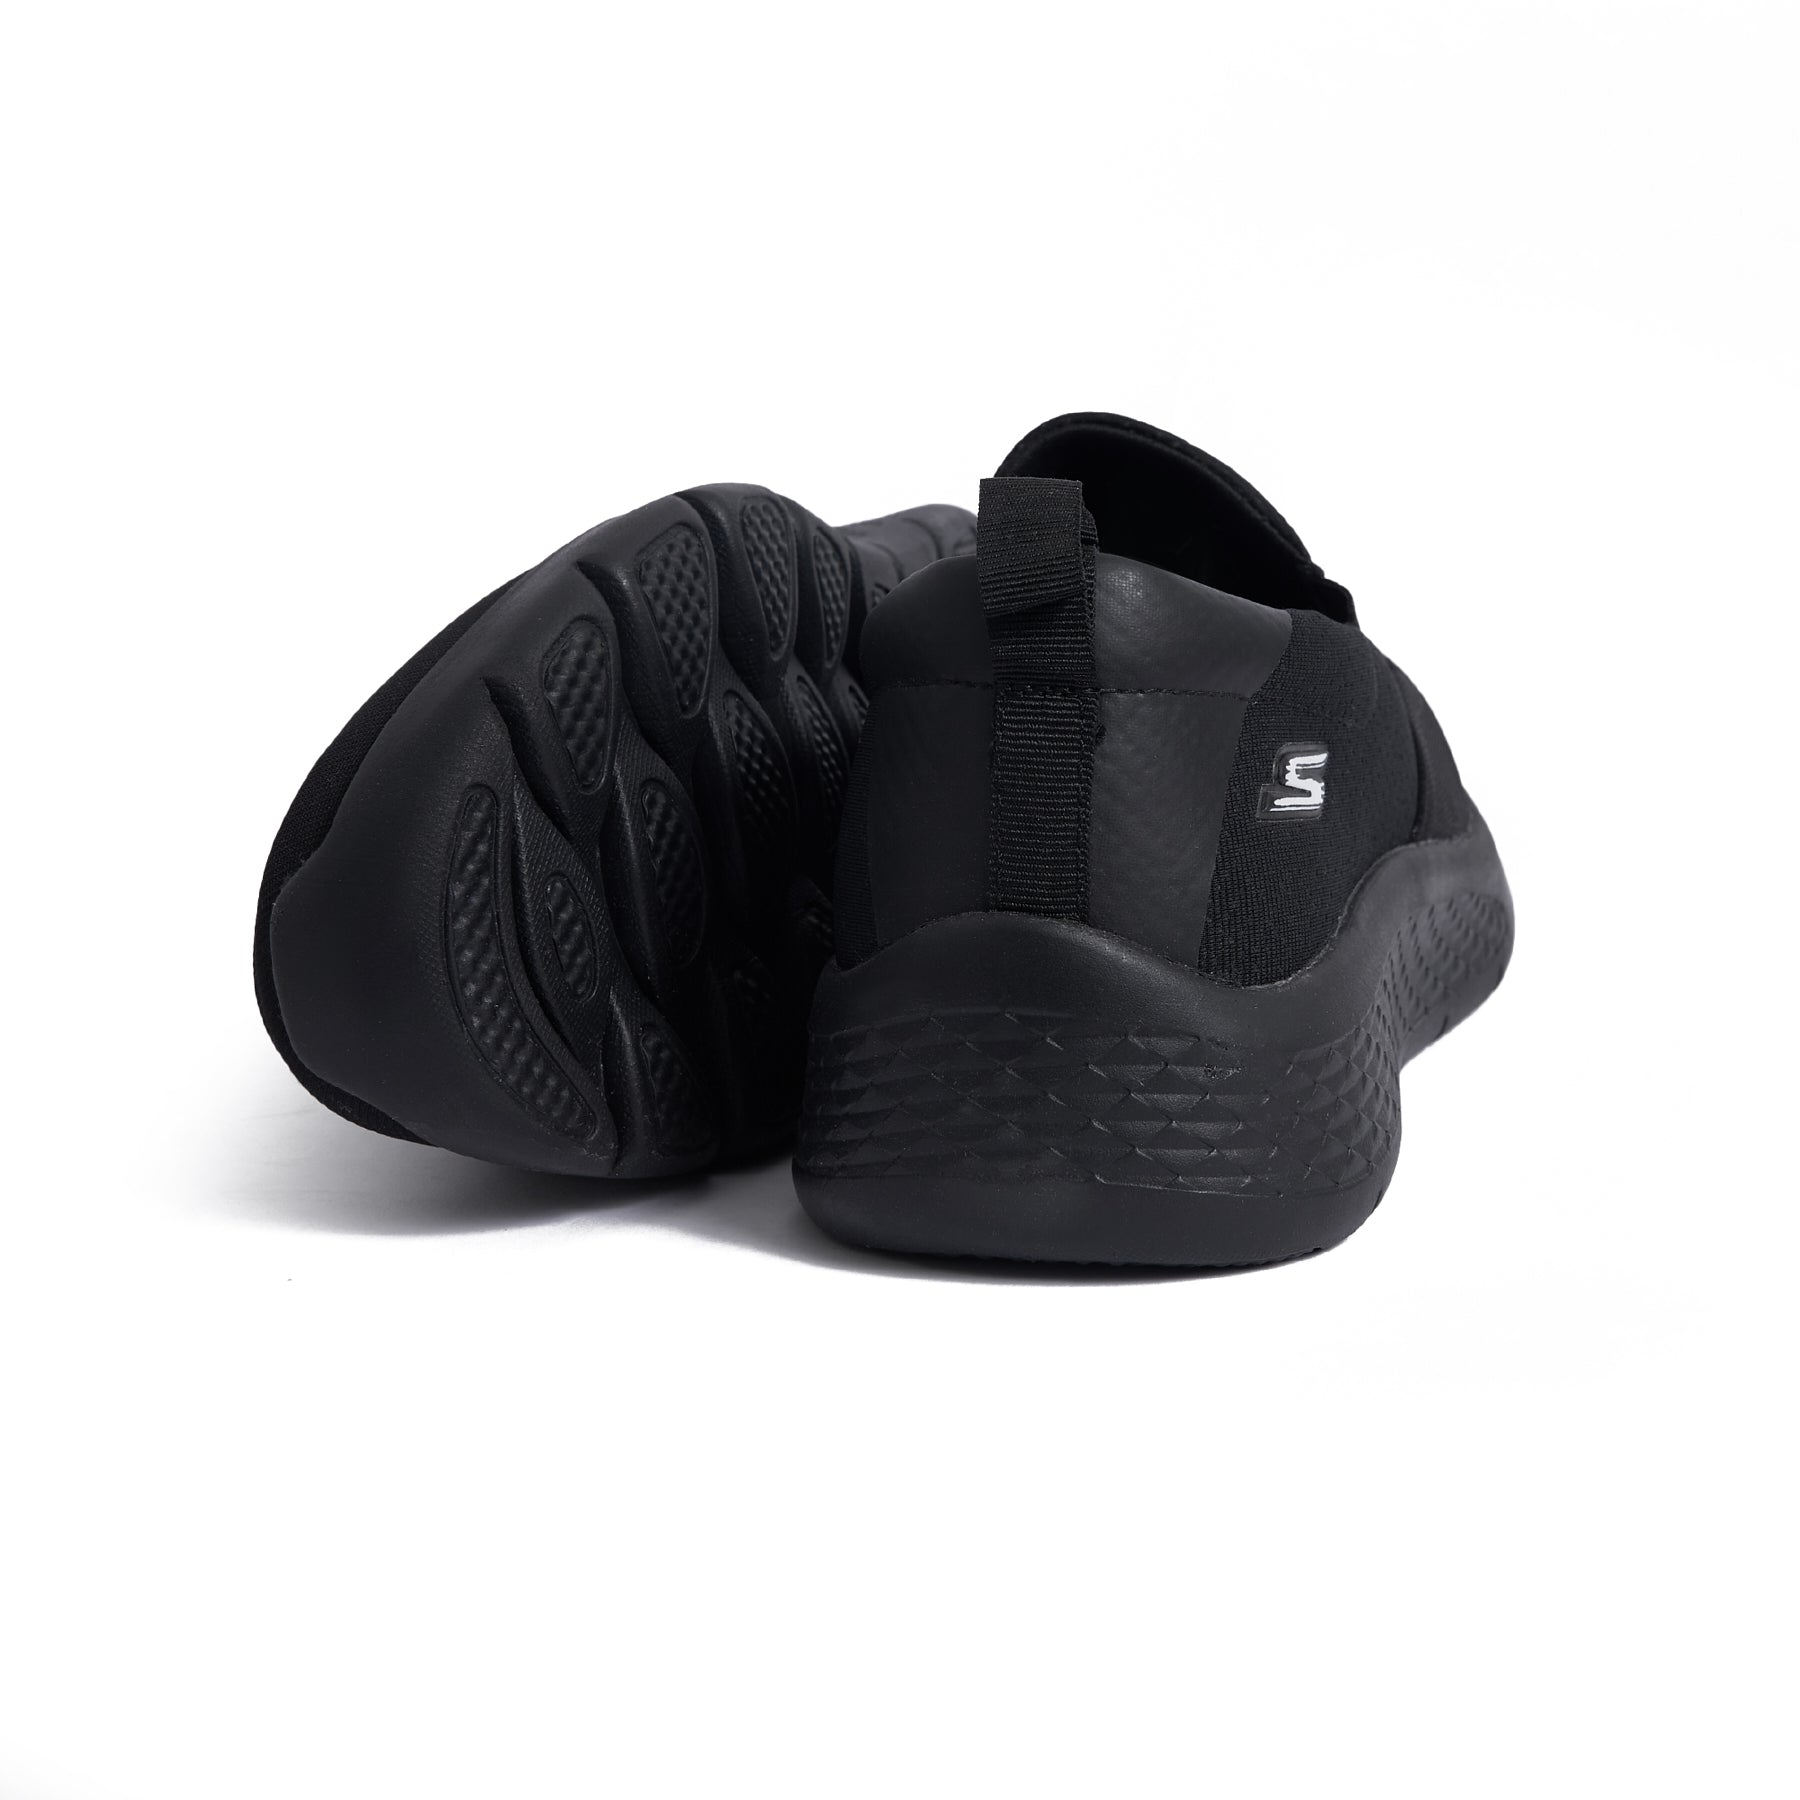 Men's Skechers Stylish and Sleek Sneaker - Black Model A06